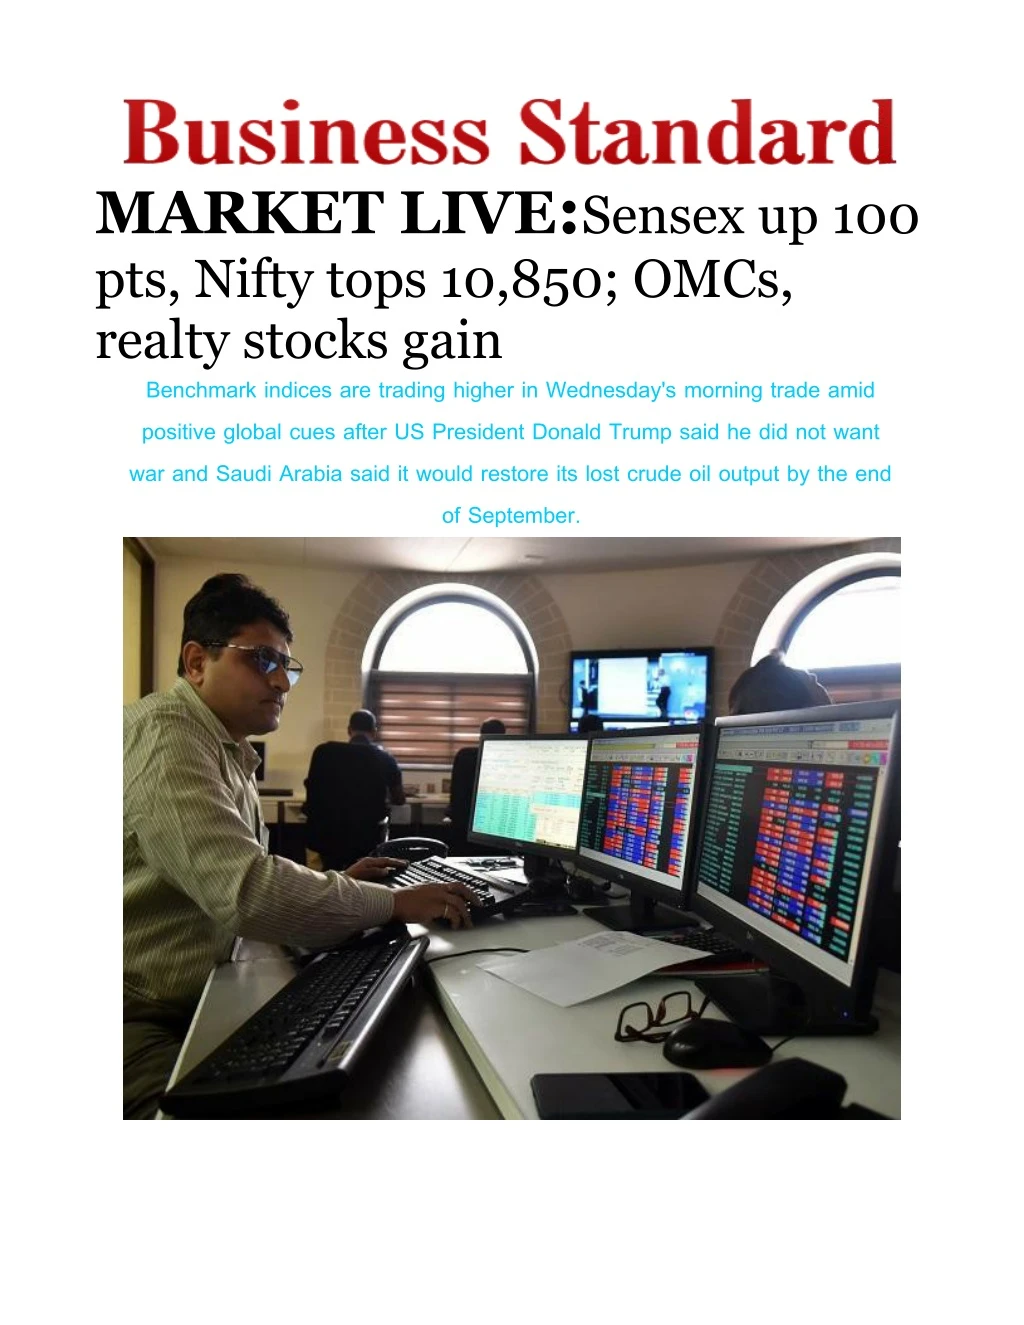 market live sensex up 100 pts nifty tops